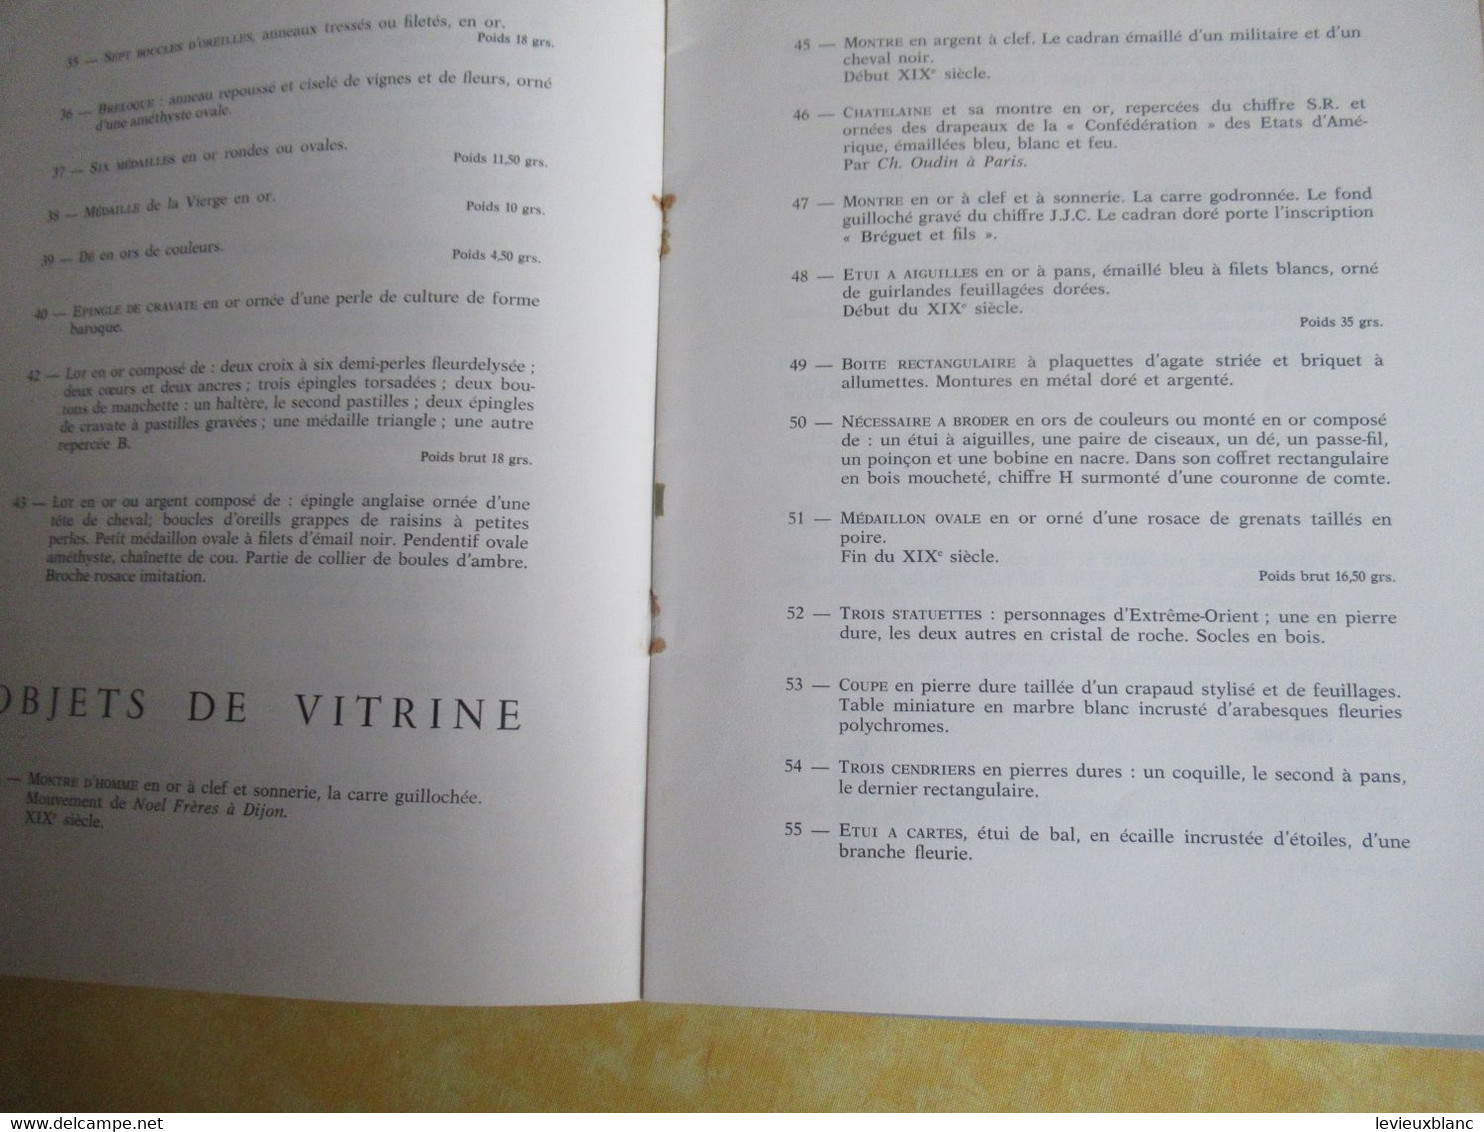 Vente Aux Enchères /Hôtel DROUOT/ Bijoux, Argenterie,Objets De Vitrine / ADER-PICARD/1971  CAT292 - Magazines & Catalogs